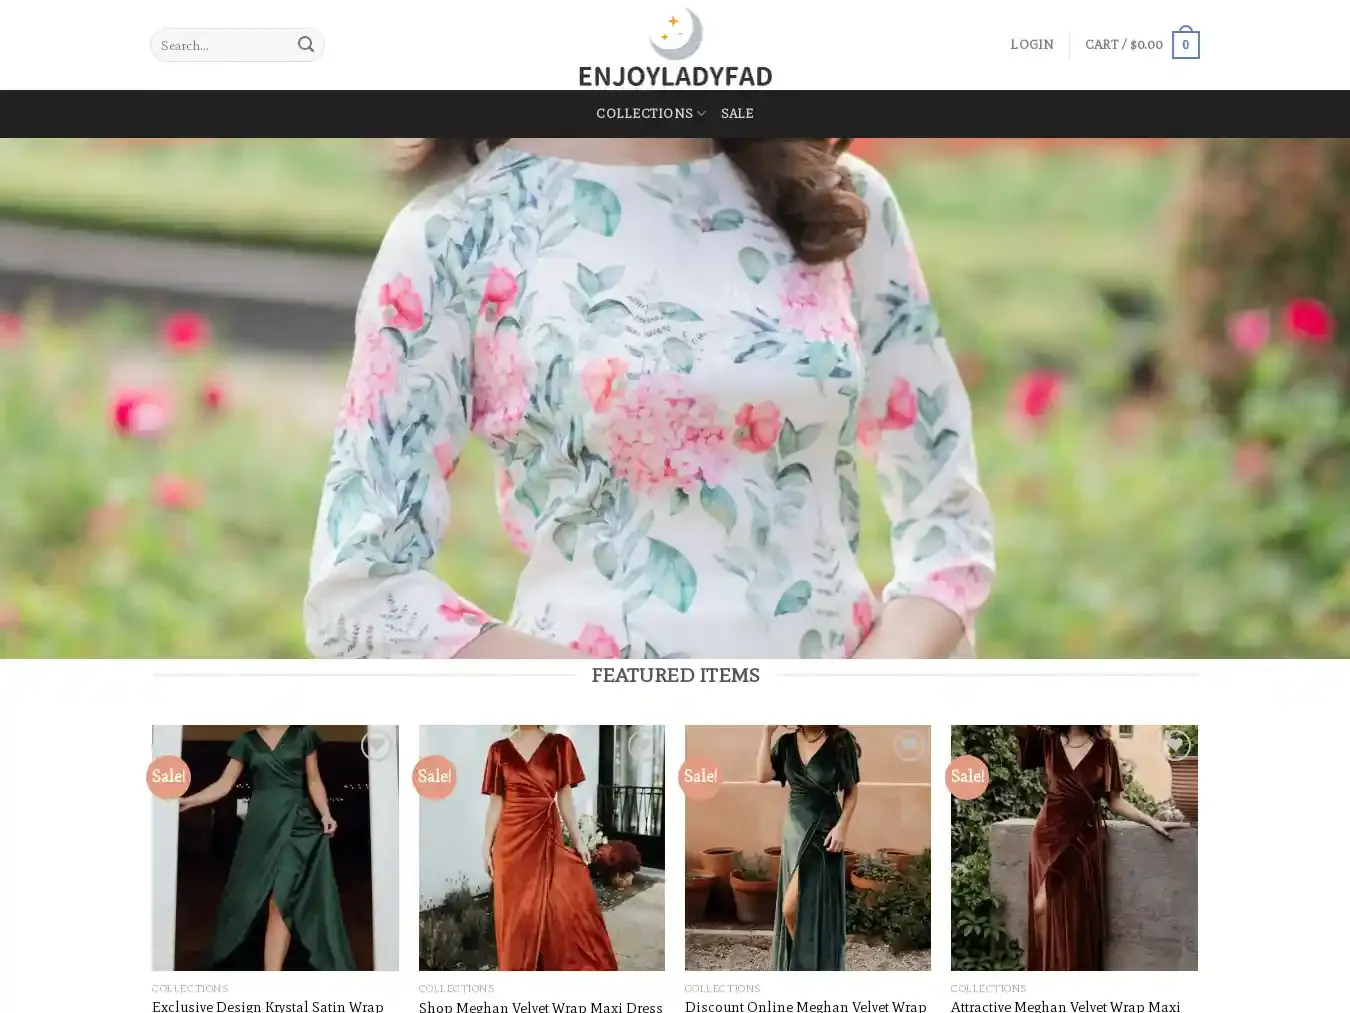 Enjoyladyfad.com Fraudulent Fashion website.